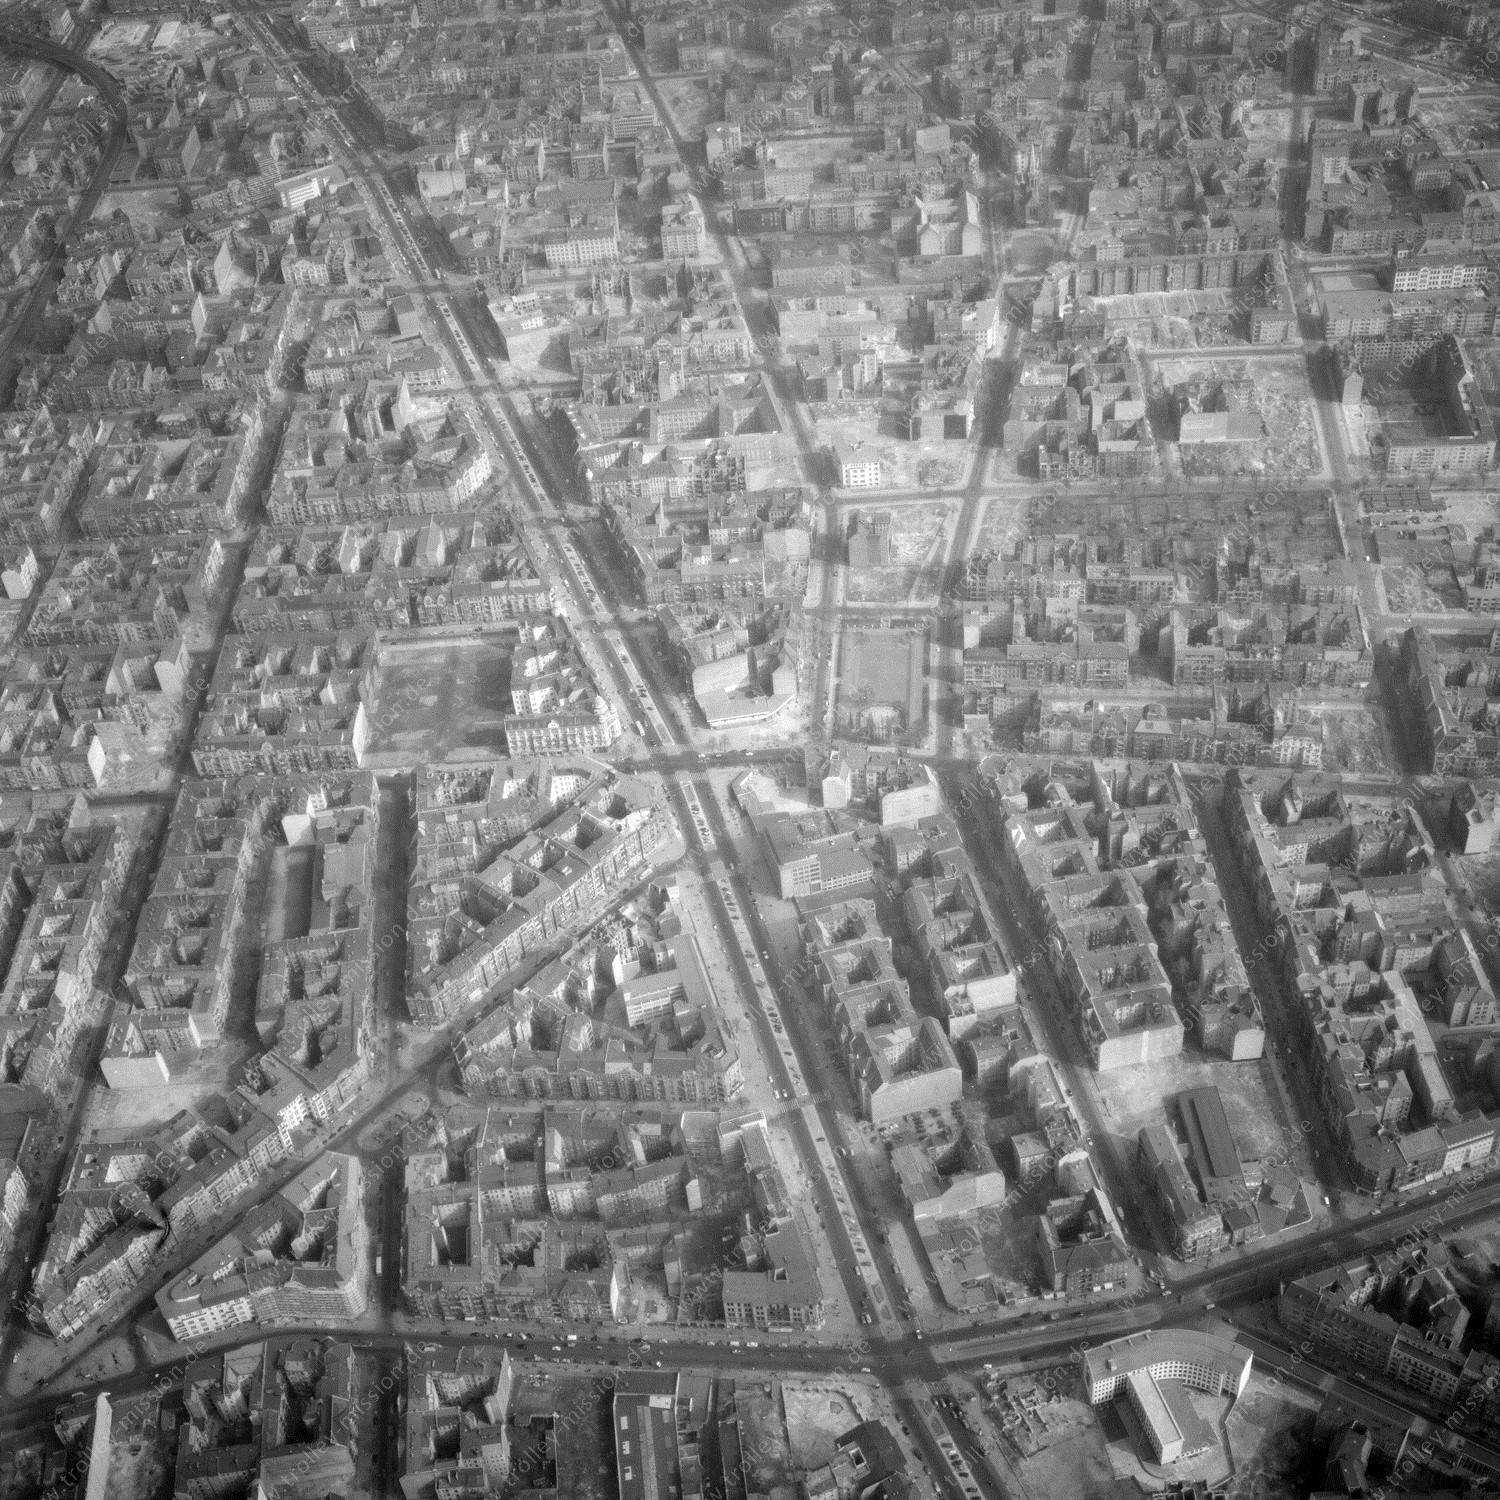 Alte Fotos und Luftbilder von Berlin - Luftbildaufnahme Nr. 12 - Historische Luftaufnahmen von West-Berlin aus dem Jahr 1954 - Flugstrecke Charlie